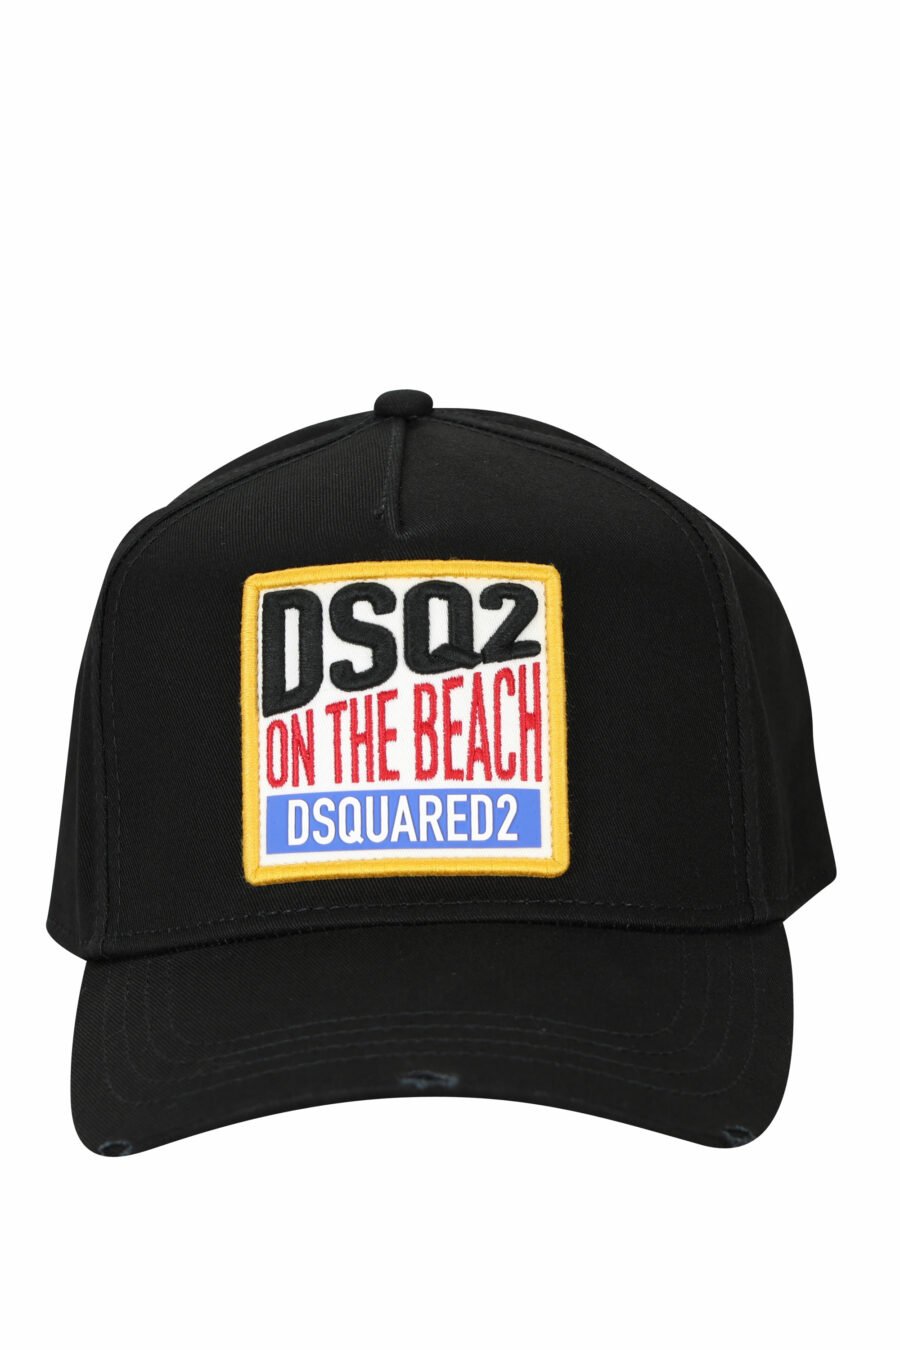 Schwarze Kappe mit "Dsq2 on the beach" Box - 8055777286838